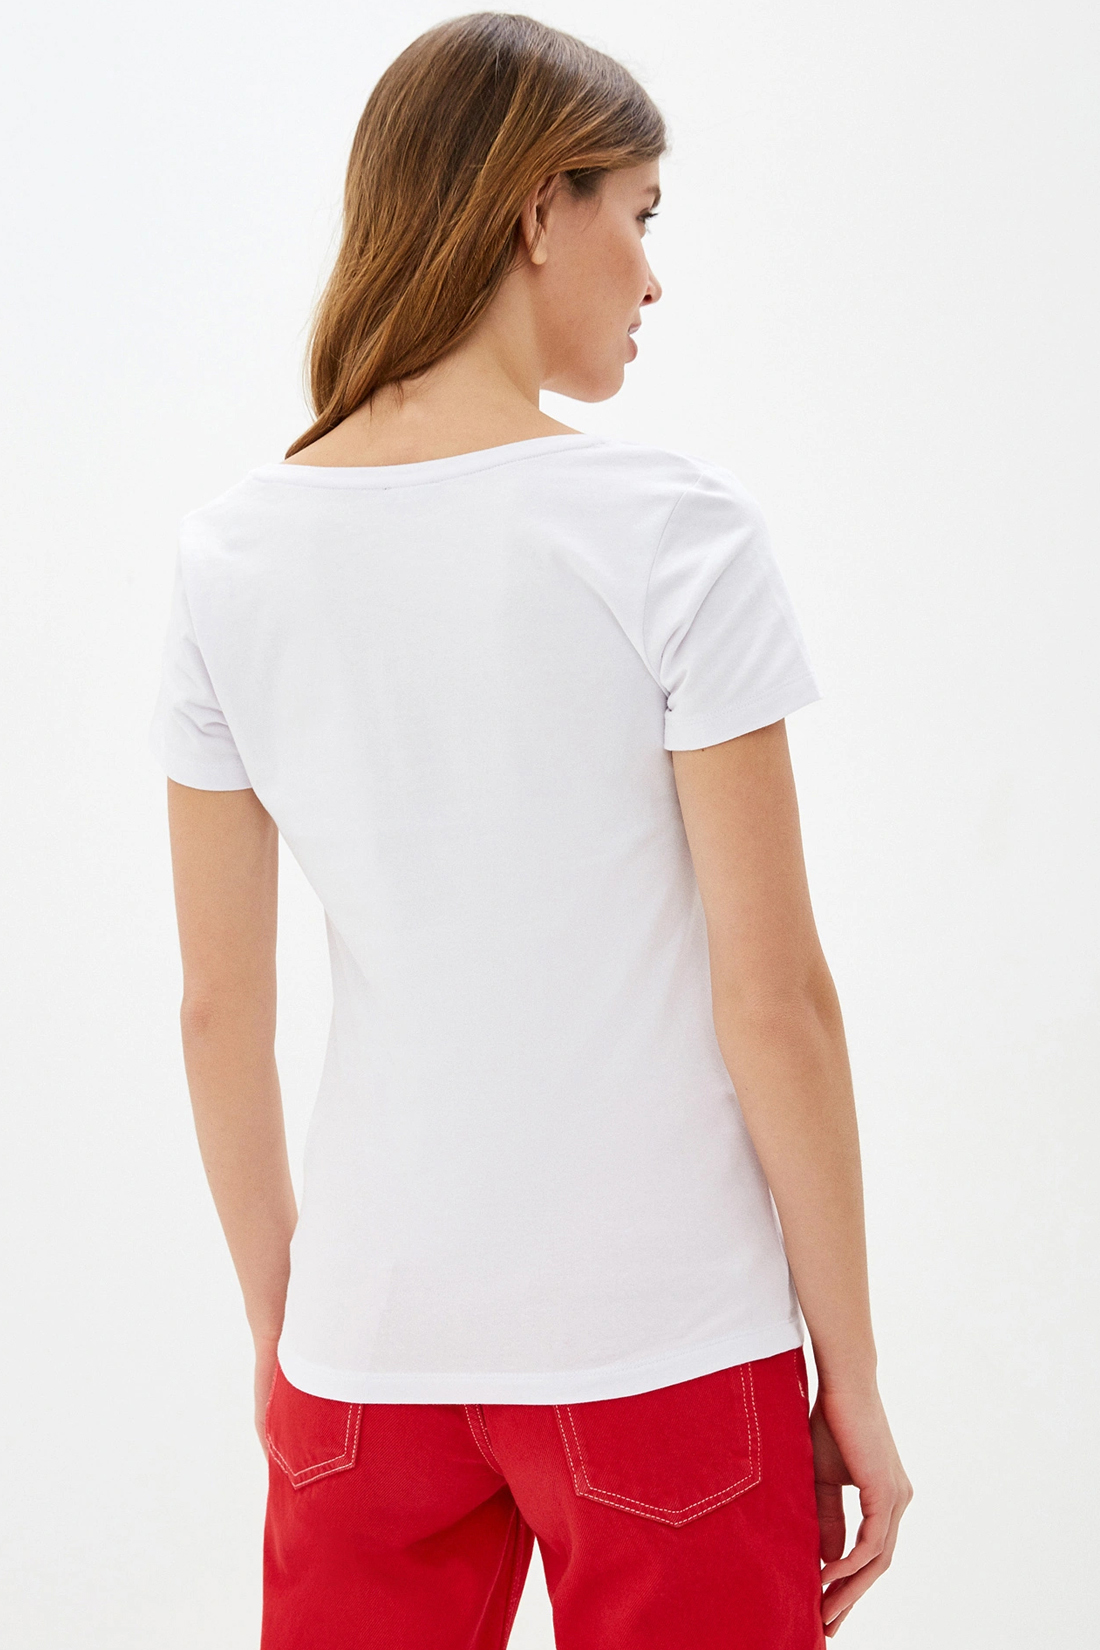 Базовая футболка (арт. baon B230205), размер L, цвет белый Базовая футболка (арт. baon B230205) - фото 2